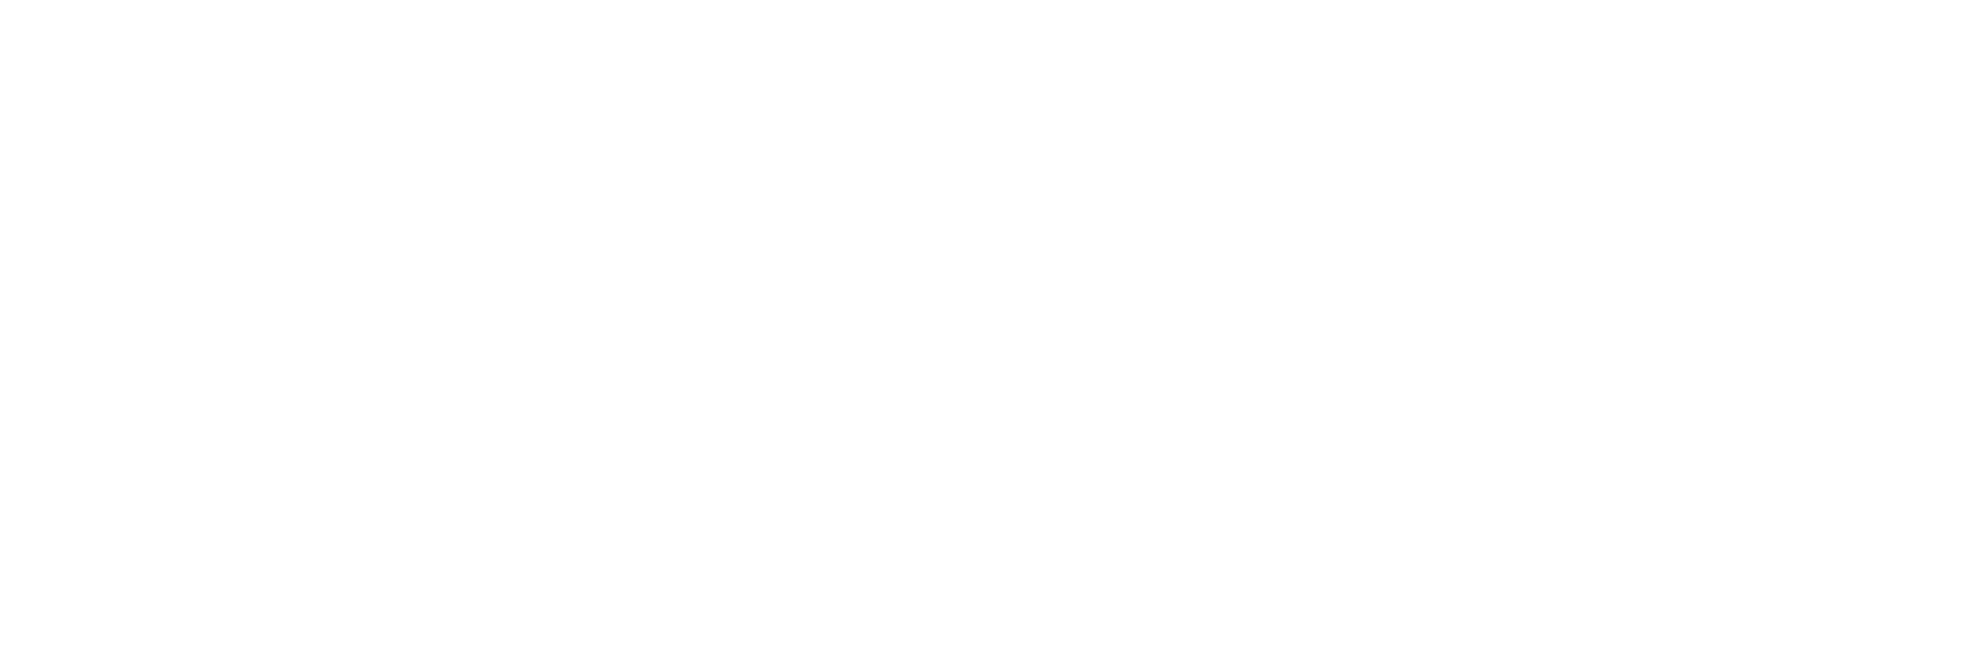 ISO 9001 + ISO/IEC 27001